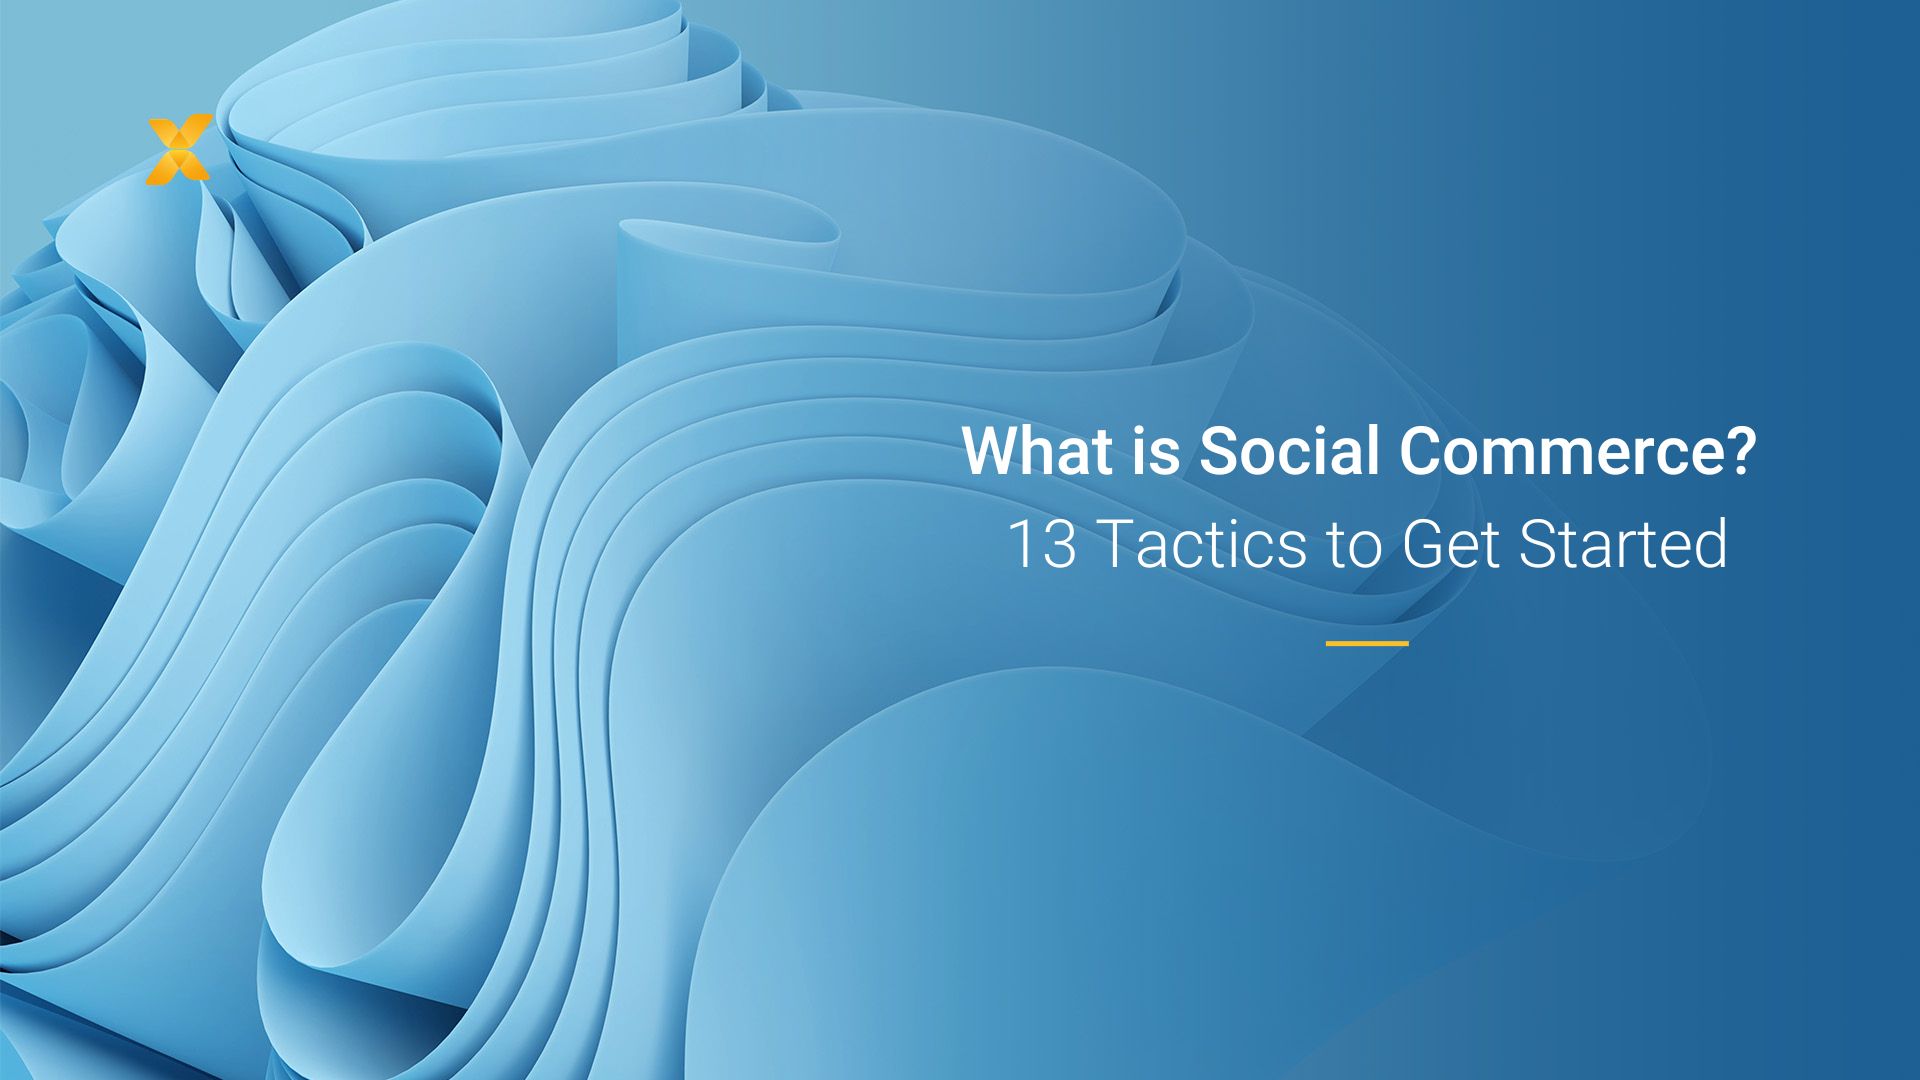 Social Commerce là xu hướng hiện đại trong kinh doanh, hướng đến khách hàng thông qua mạng xã hội. Hãy cùng xem hình ảnh liên quan đến Social Commerce để hiểu rõ hơn về cách thức hoạt động của nó và tận dụng những cơ hội kinh doanh mới.